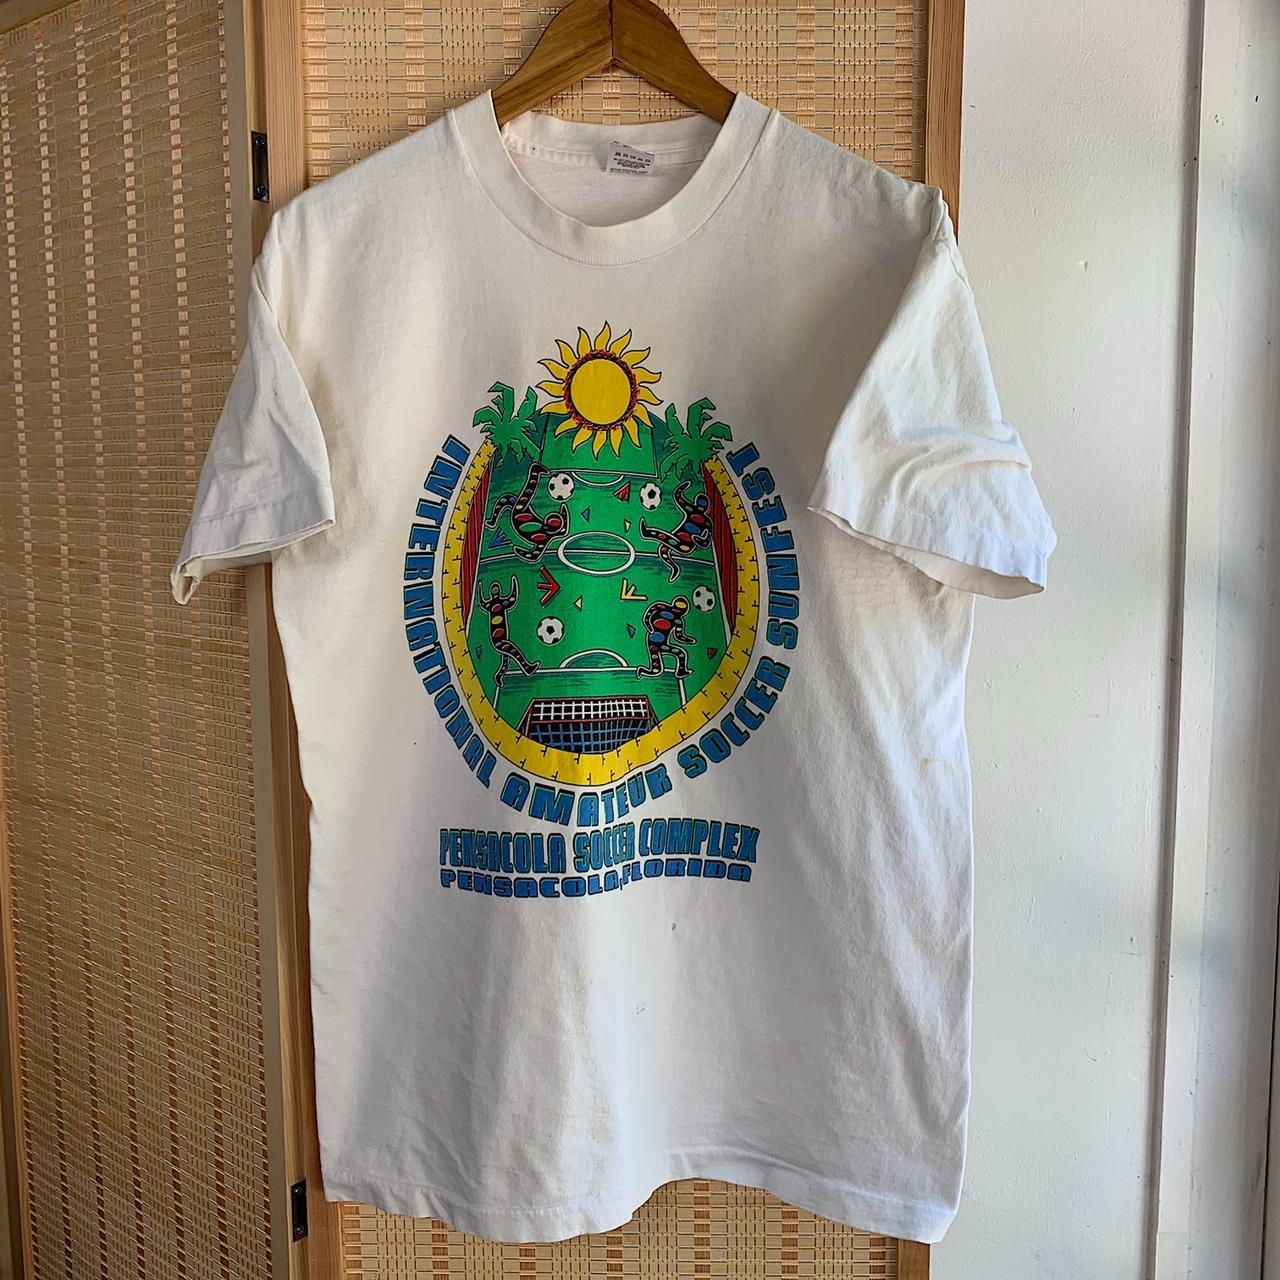 Vintage 1990s soccer T-shirt size large.... - Depop